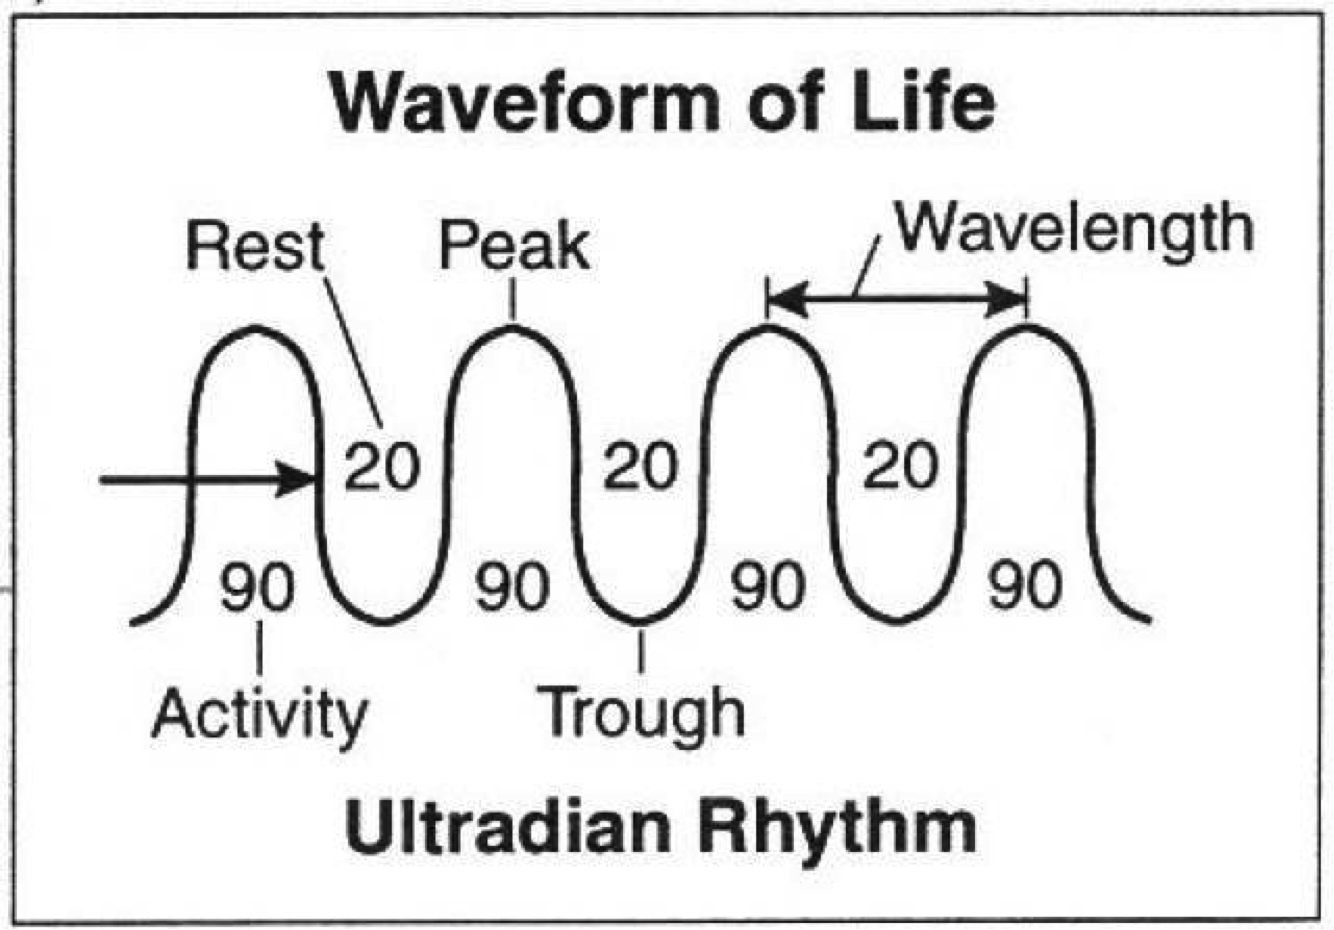 Waveform of Ultradian Rhythm